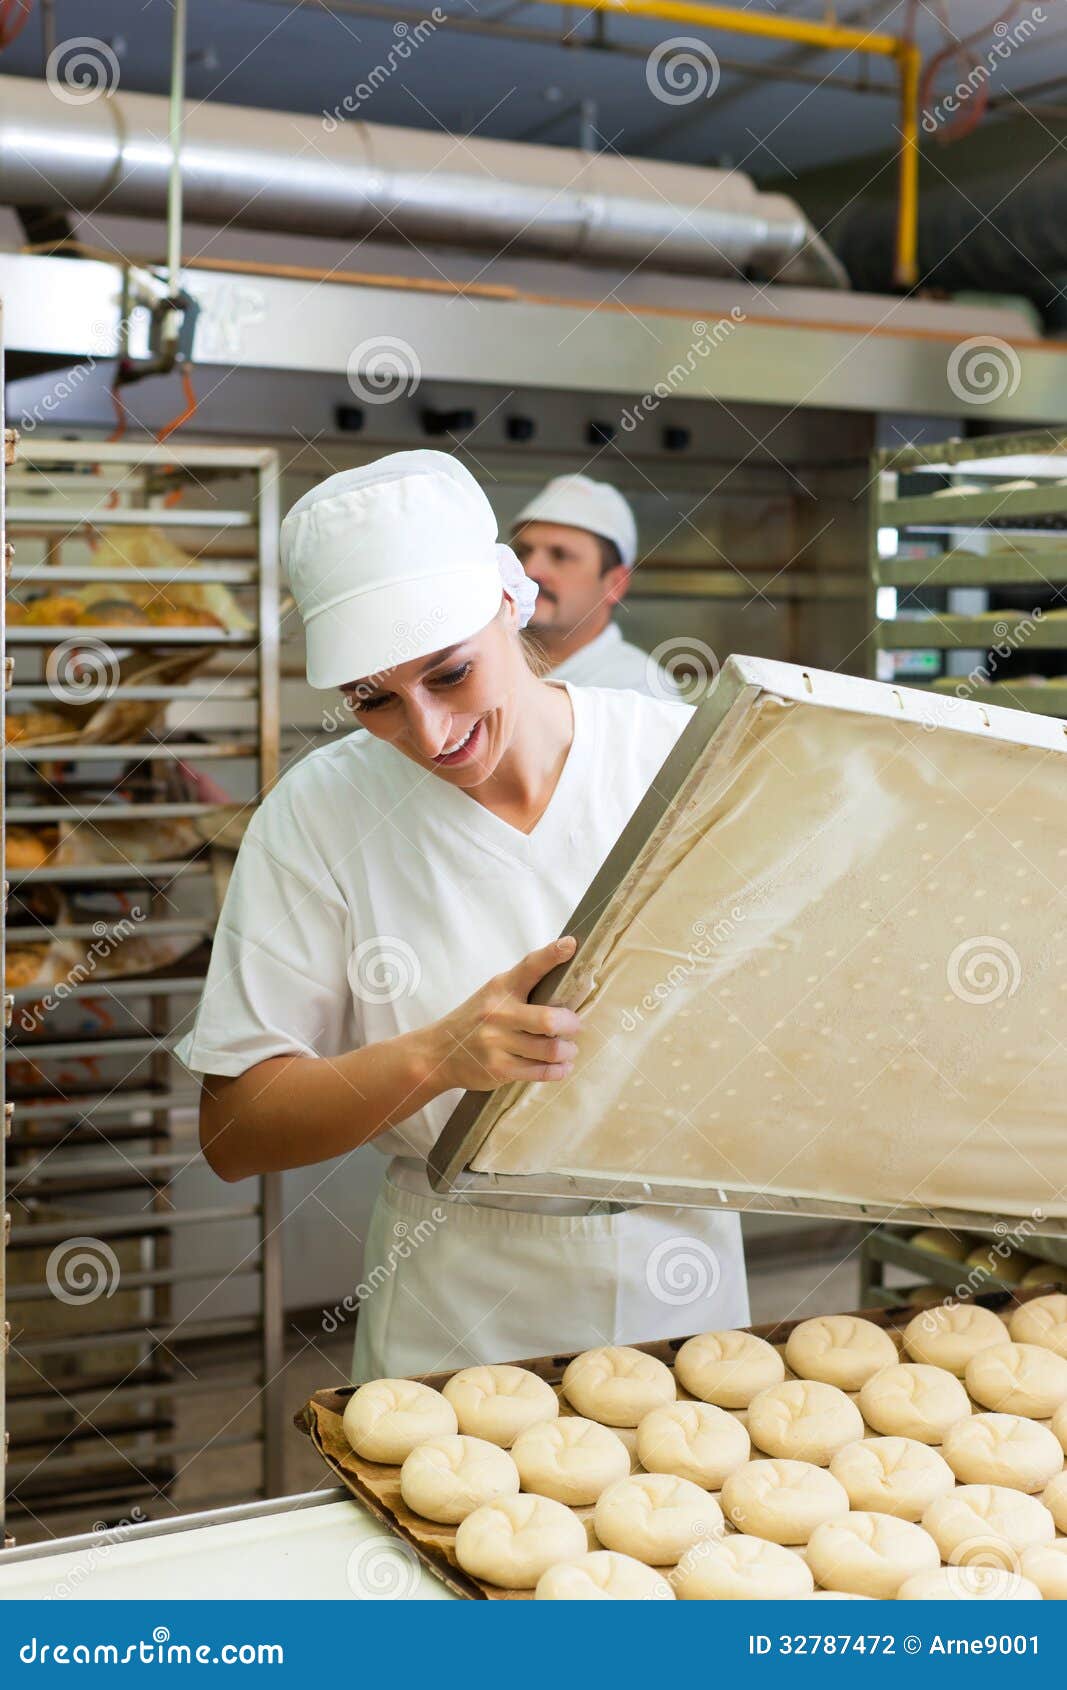 female baker baking bread rolls